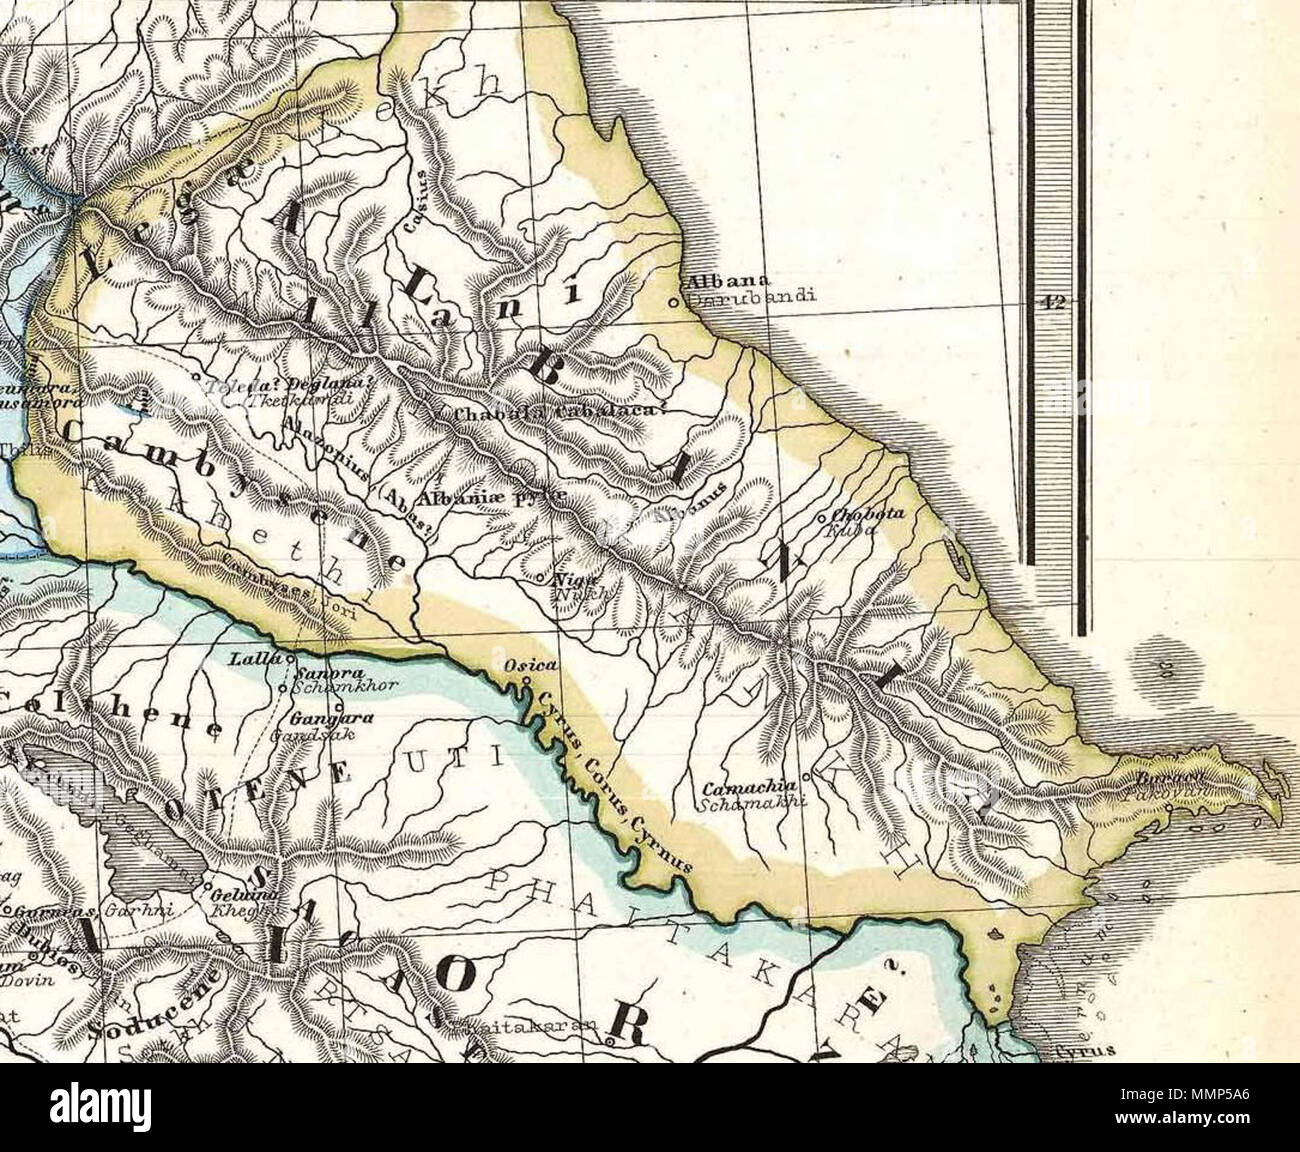 . Anglais : l'Albanie sur un site particulièrement intéressant, c'est Karl von Spruner's 1865 rendering du Caucase et de la mésopotamie dans l'antiquité. Centrée sur le lac de Van (est de la Turquie), cette carte couvre la région du Caucase, entre la mer Noire et la mer Caspienne, puis vers le sud pour le Croissant fertile jusqu'à l'Euphrate, la Babylonie, et le chef de la région du golfe Persique. Ces régions comprennent les pays de l'Irak, l'Arménie, la Géorgie, l'Azerbaïdjan, et les régions adjacentes de la Syrie, la Turquie, l'Iran, et le Caucase du Nord. Comme la plupart des travaux du Spruner cet exemple fonds ancien p Banque D'Images